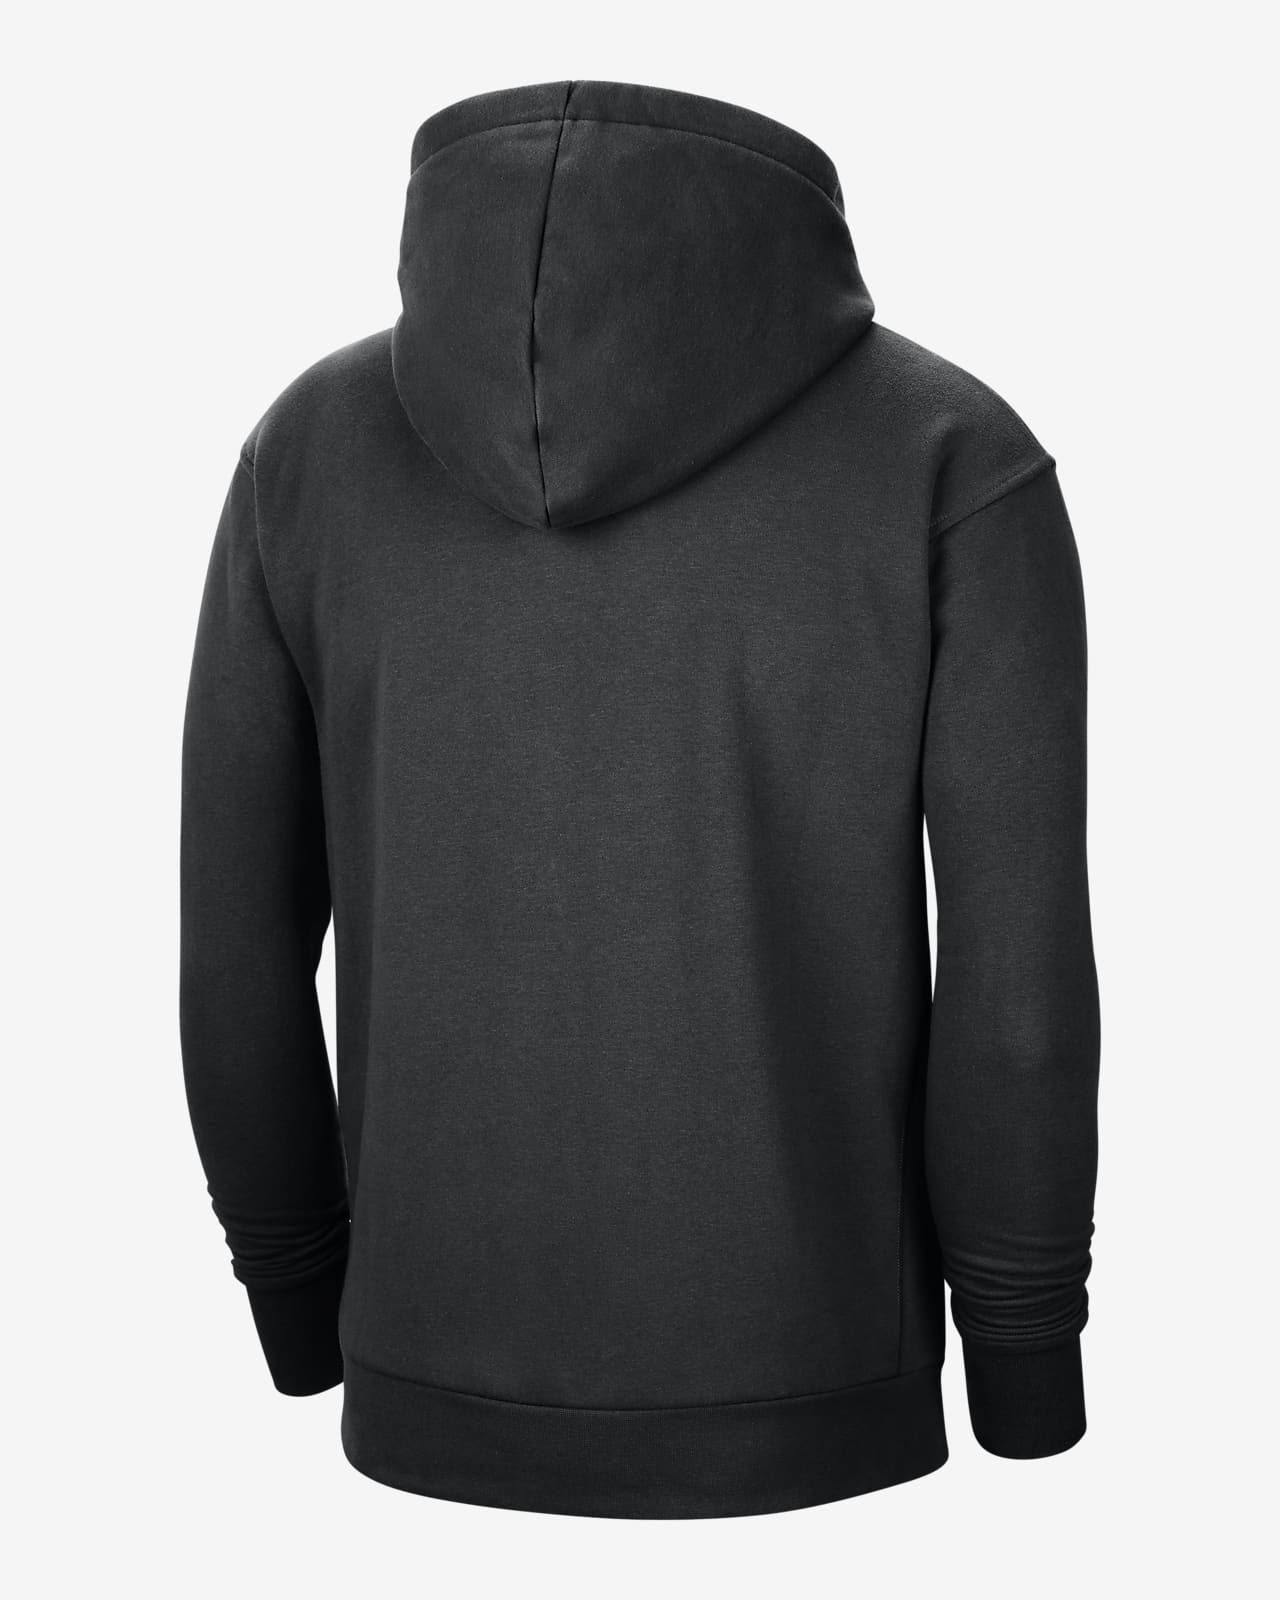 ny knicks city edition hoodie